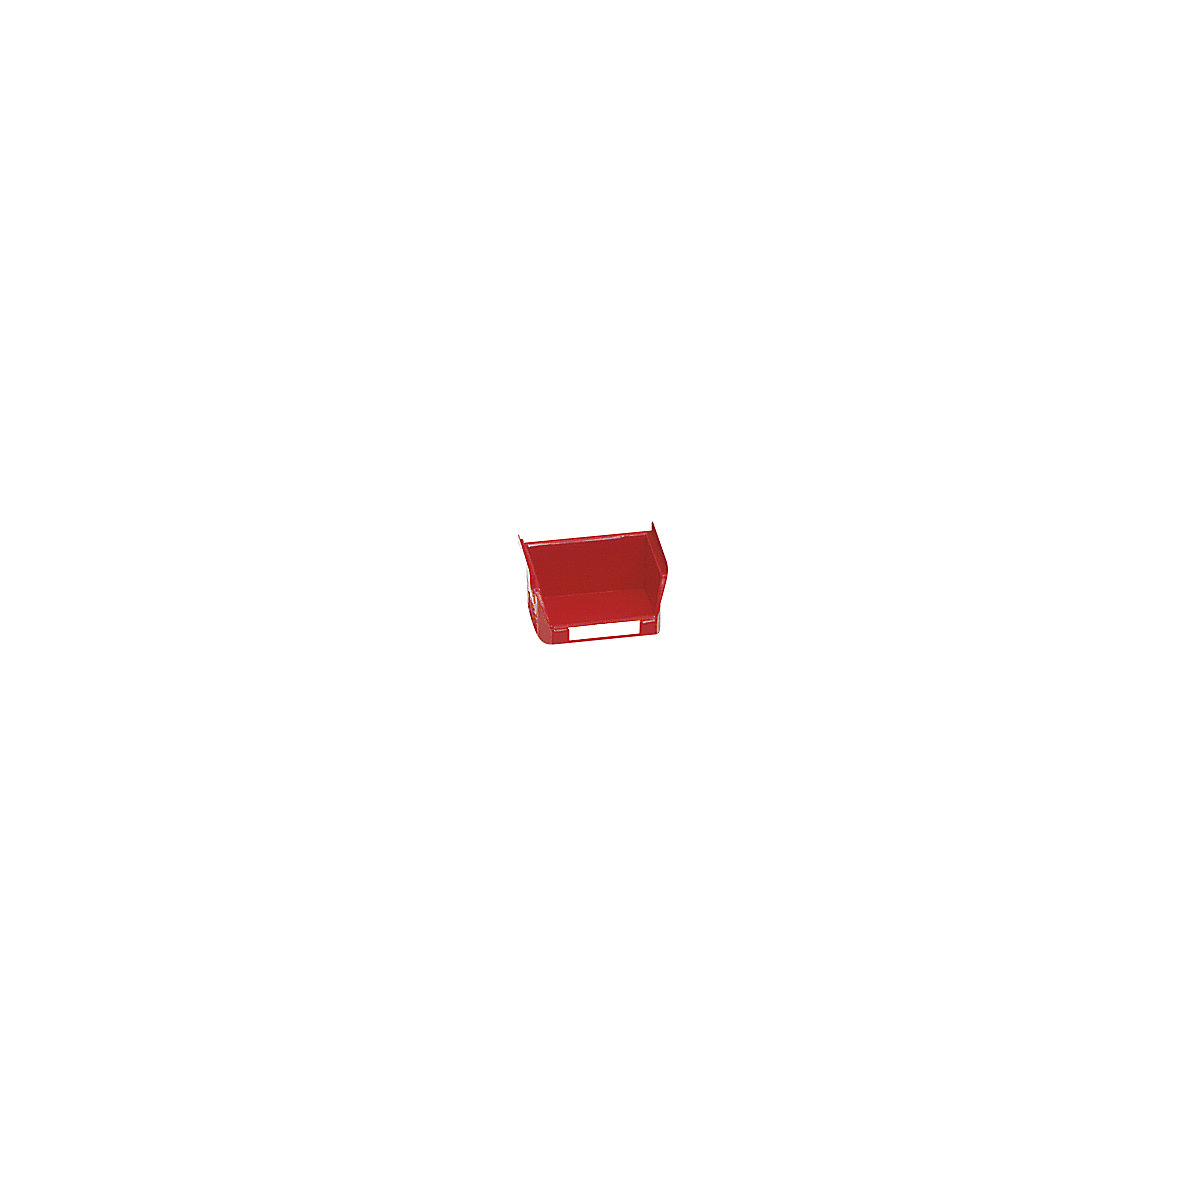 Otvorena skladišna kutija od polietilena – mauser, DxŠxV 85 x 100 x 50 mm, u crvenoj boji, pak. 50 kom.-7